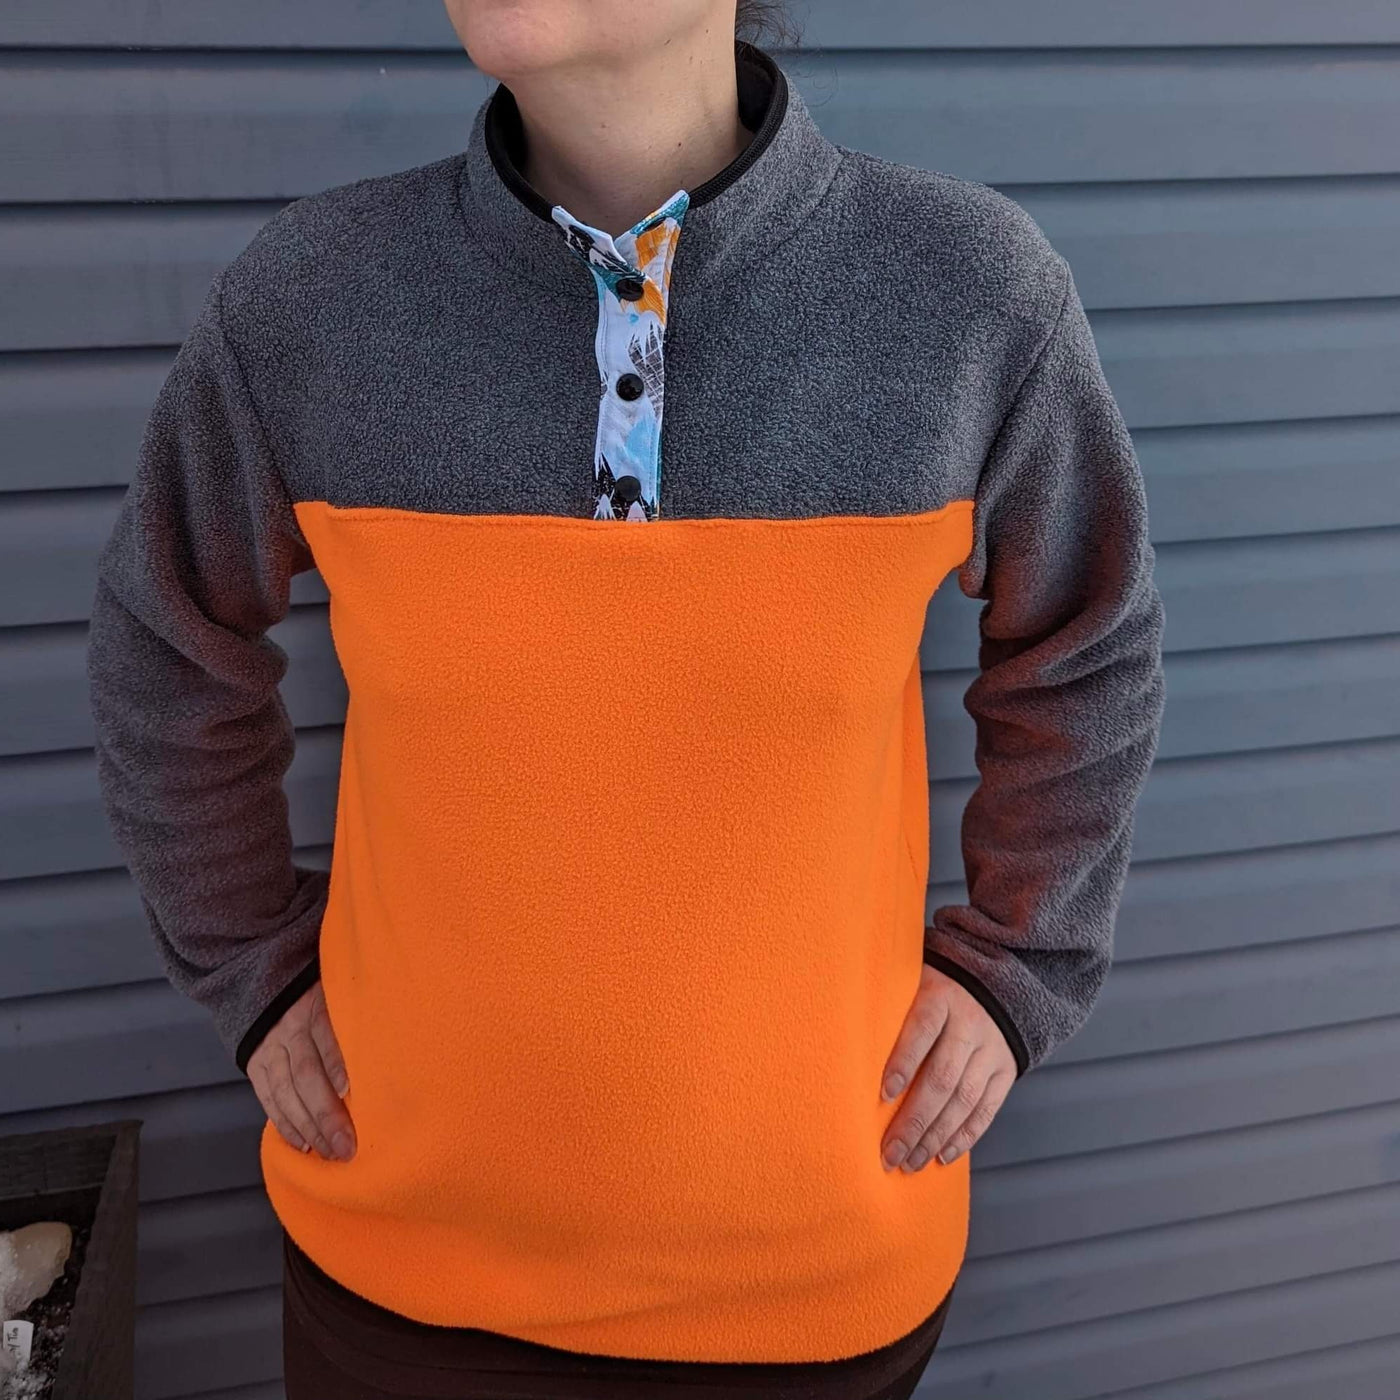 Polar Fleece Fabric sweatshirt idea